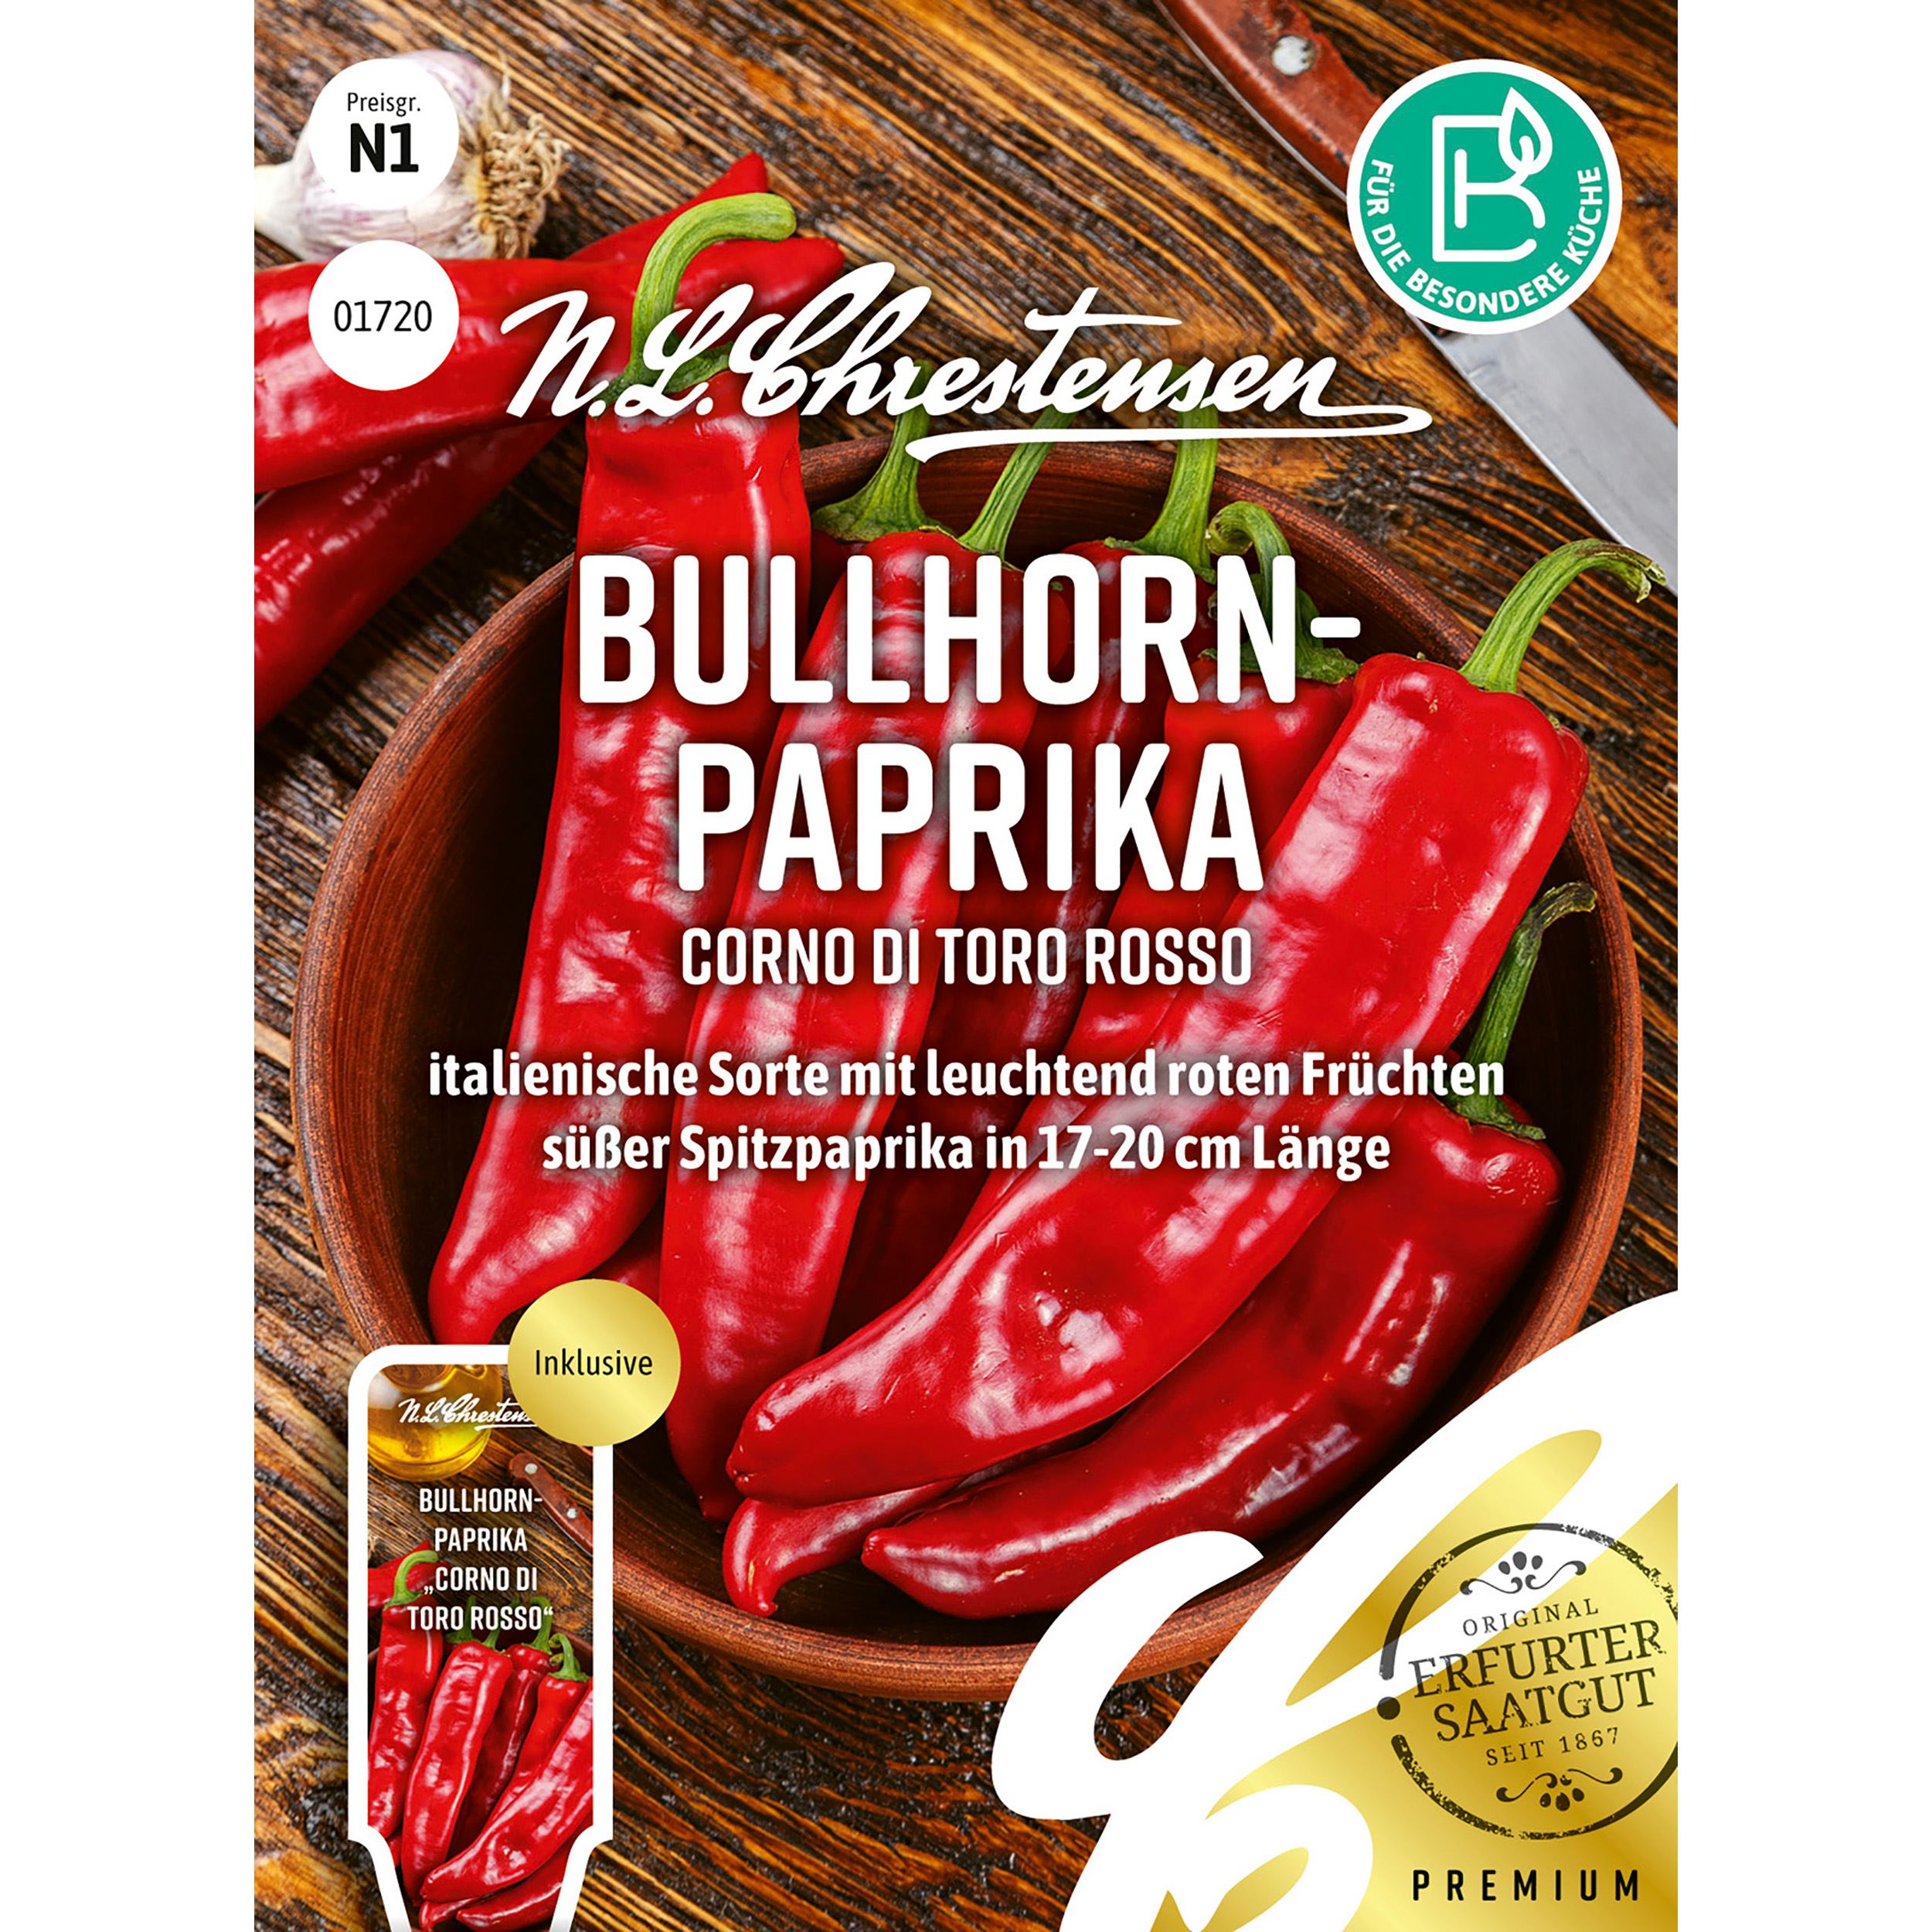 Bullhorn-
PaprikCorno di toro rosso